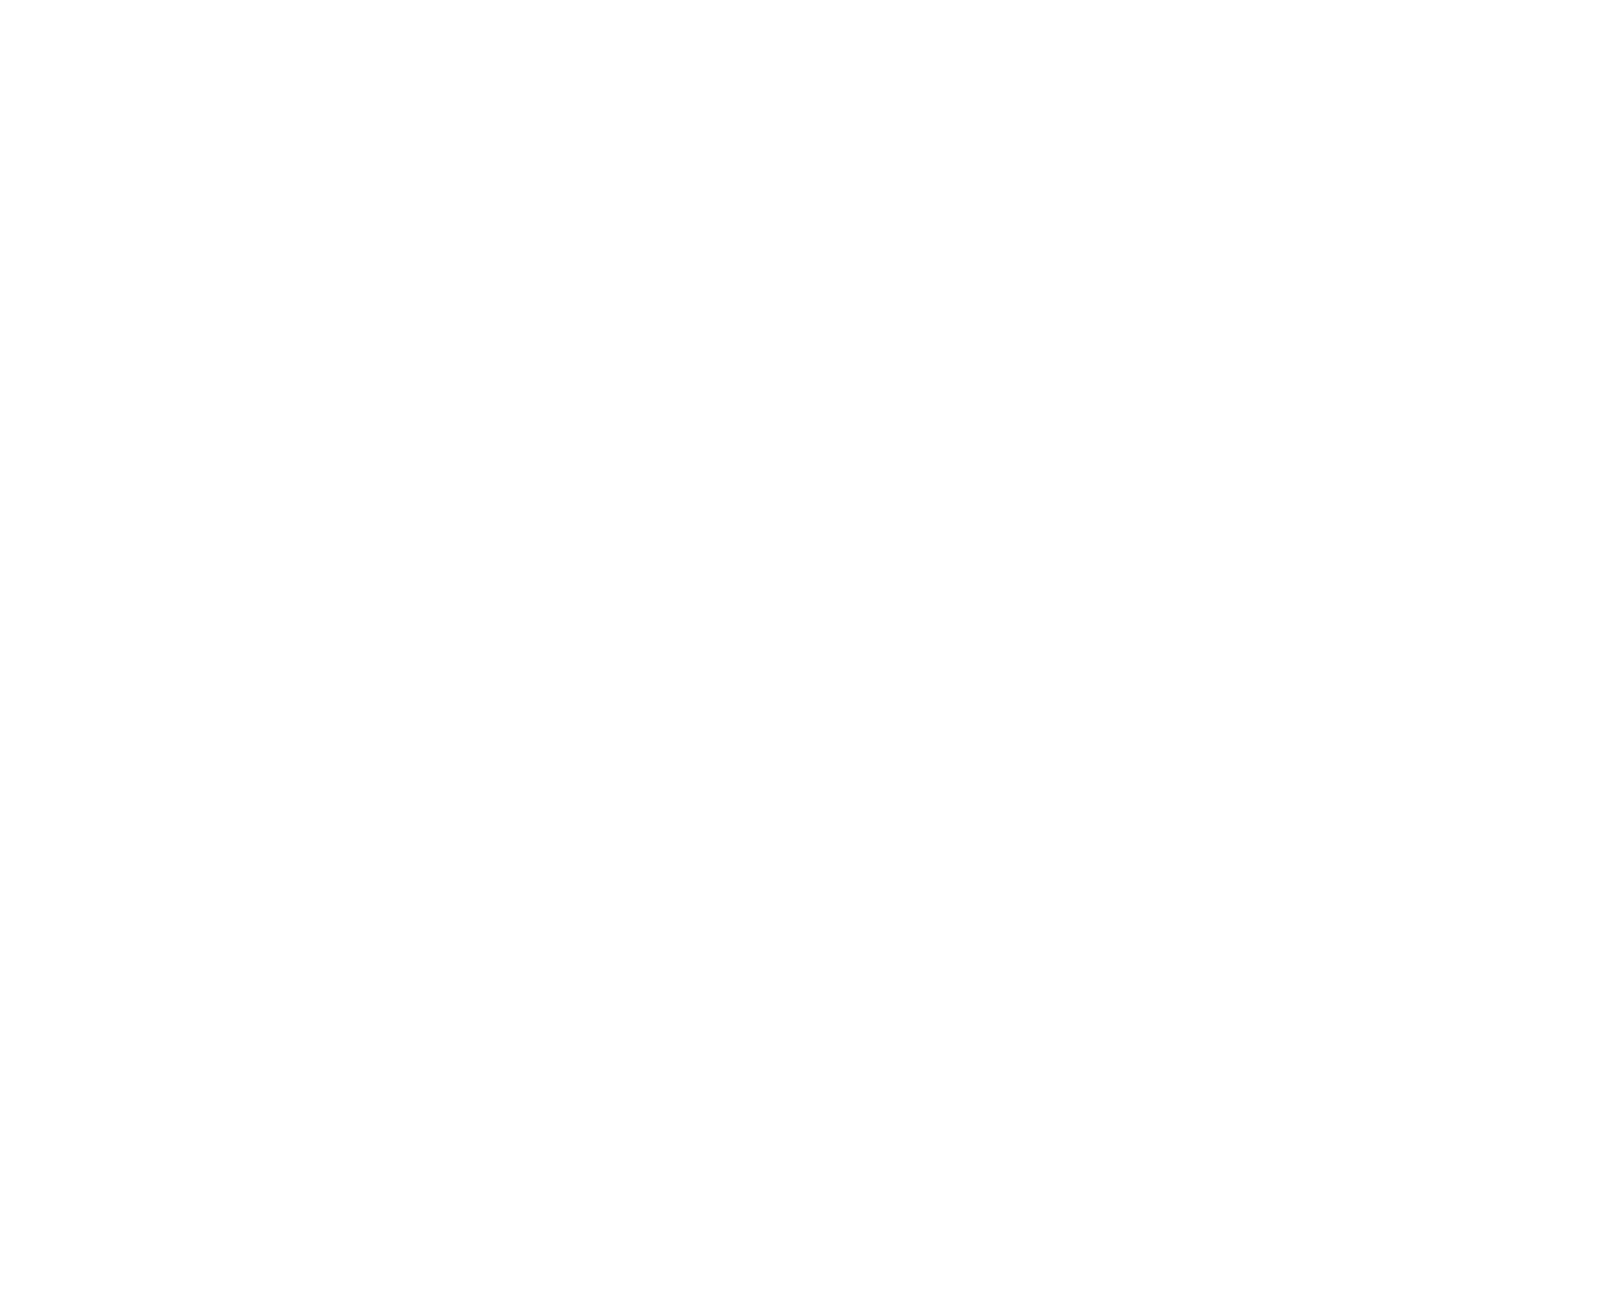 stadthotel-hamburg-logo-referenz-ultim8media